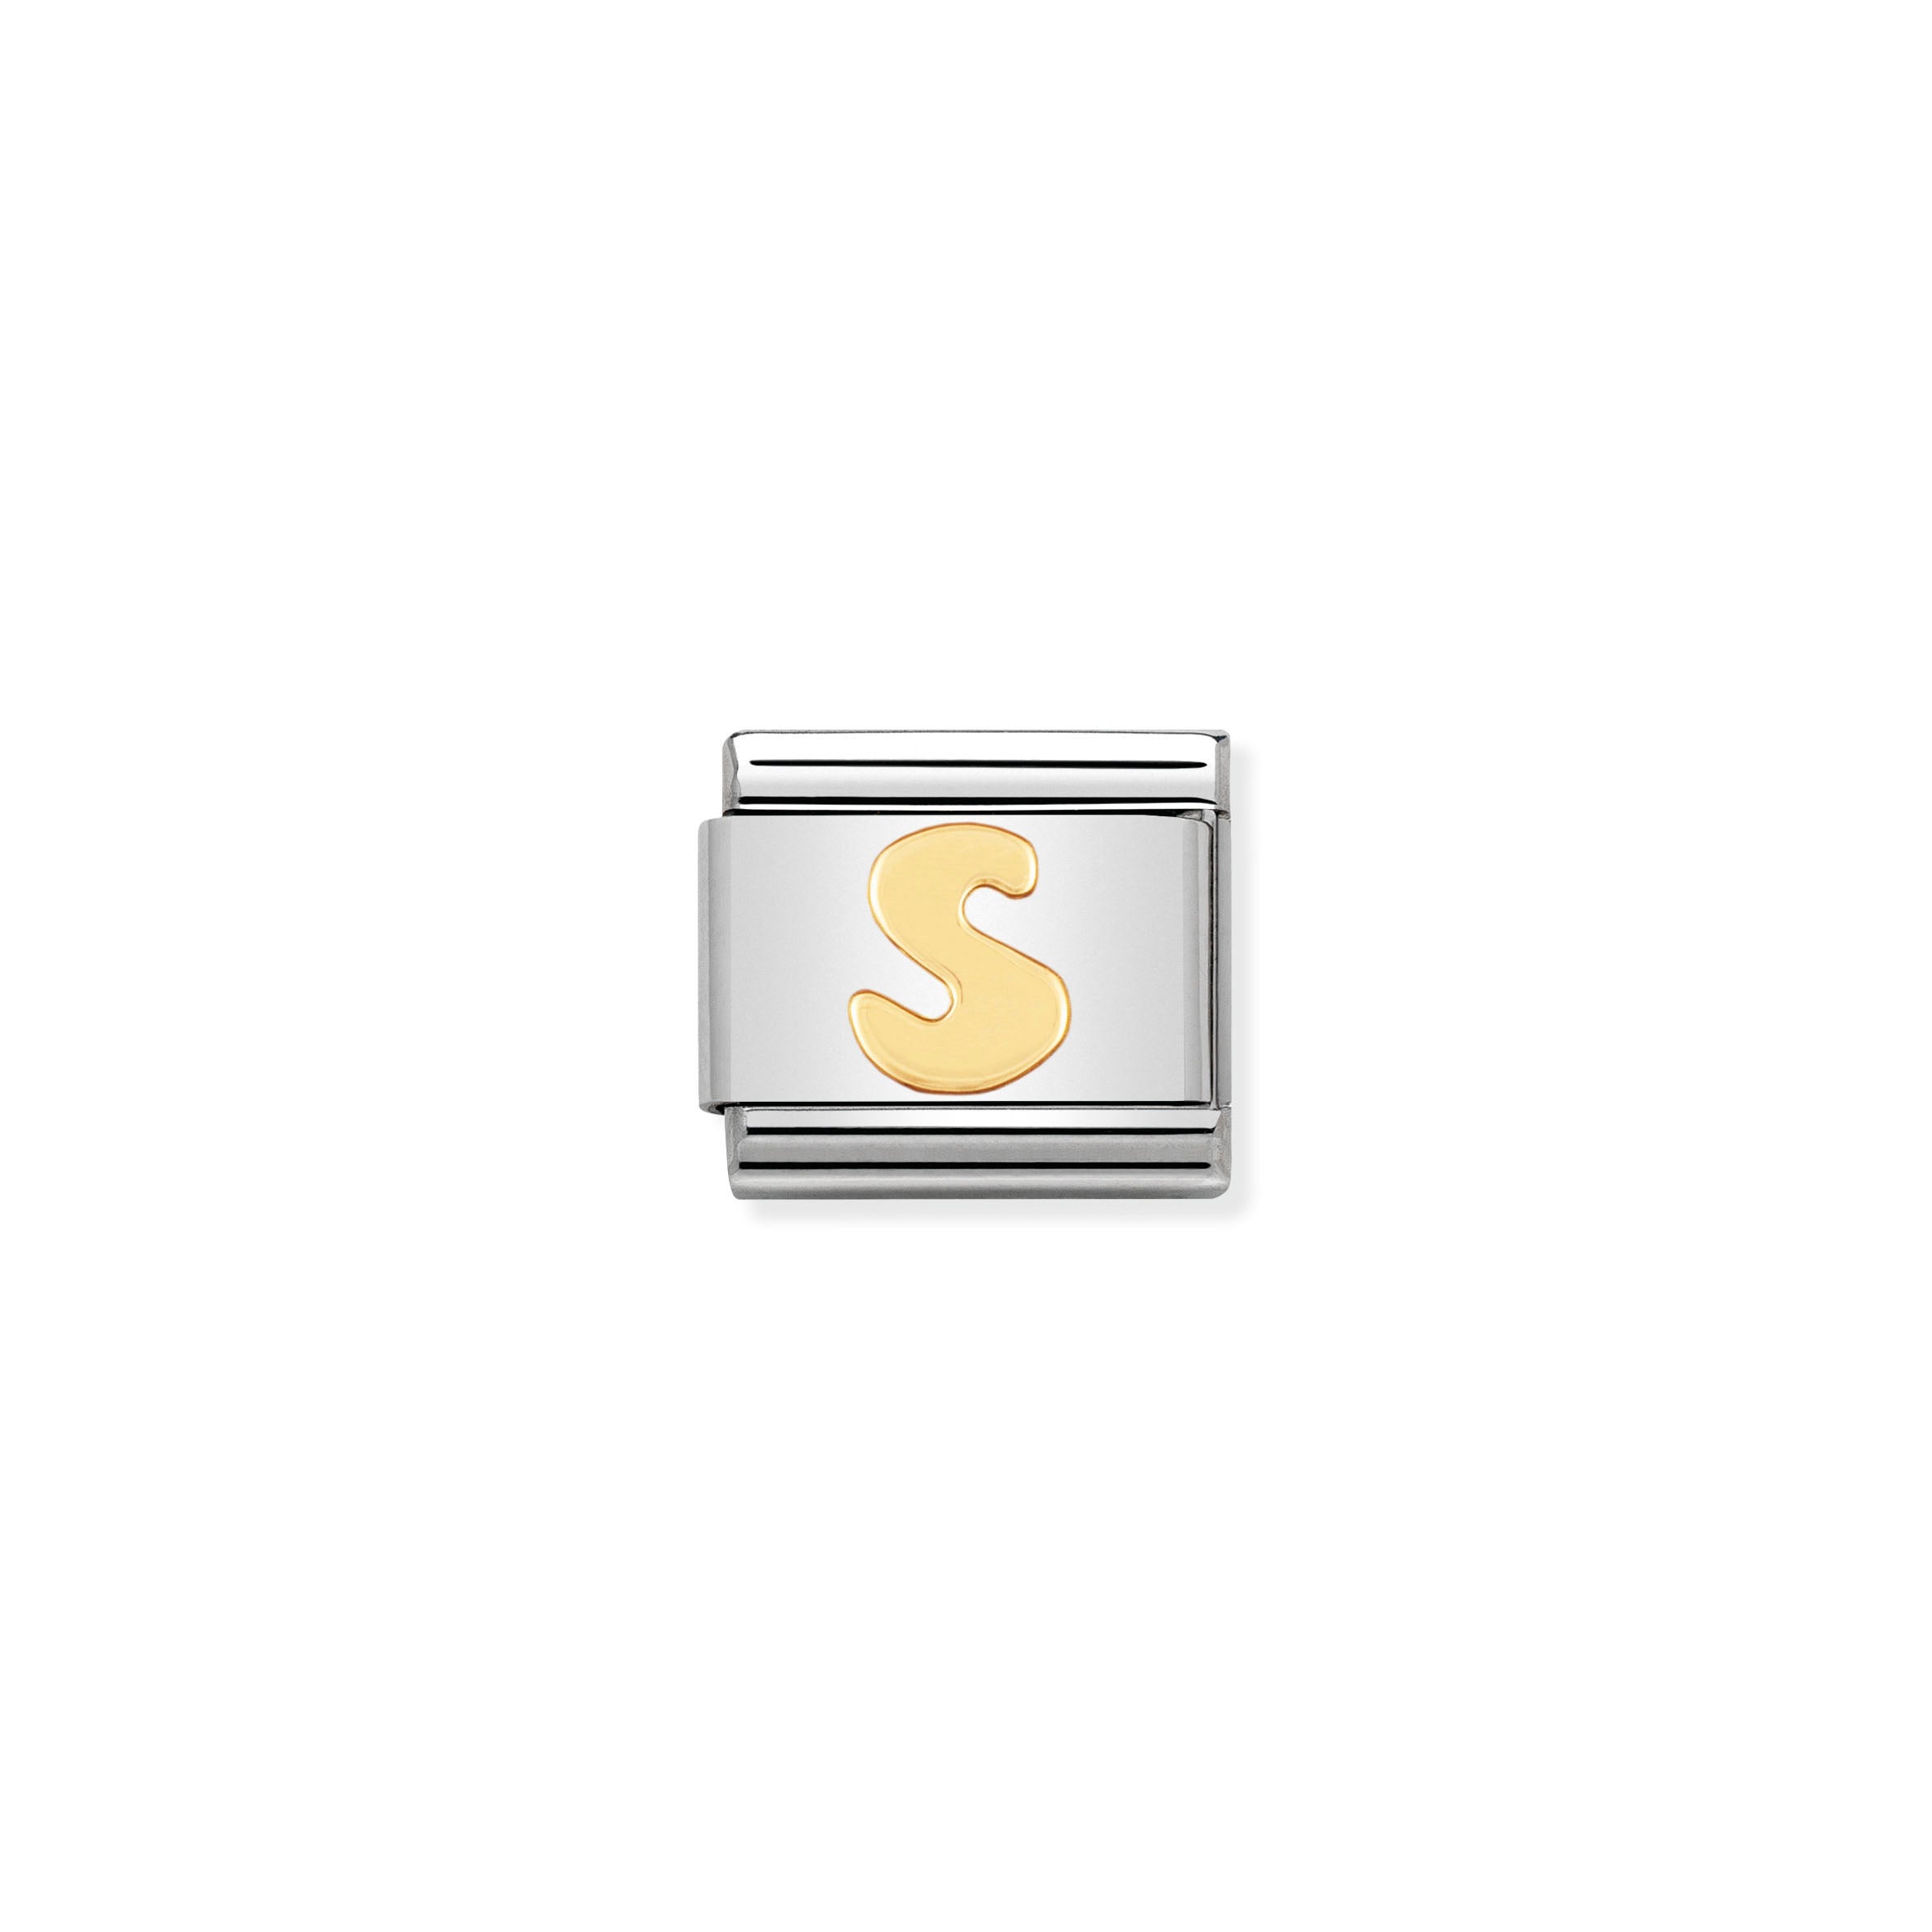 NOMINATION - Composable 030101 19- LETTERS composable classic st/st & 18ct gold (Letter S)